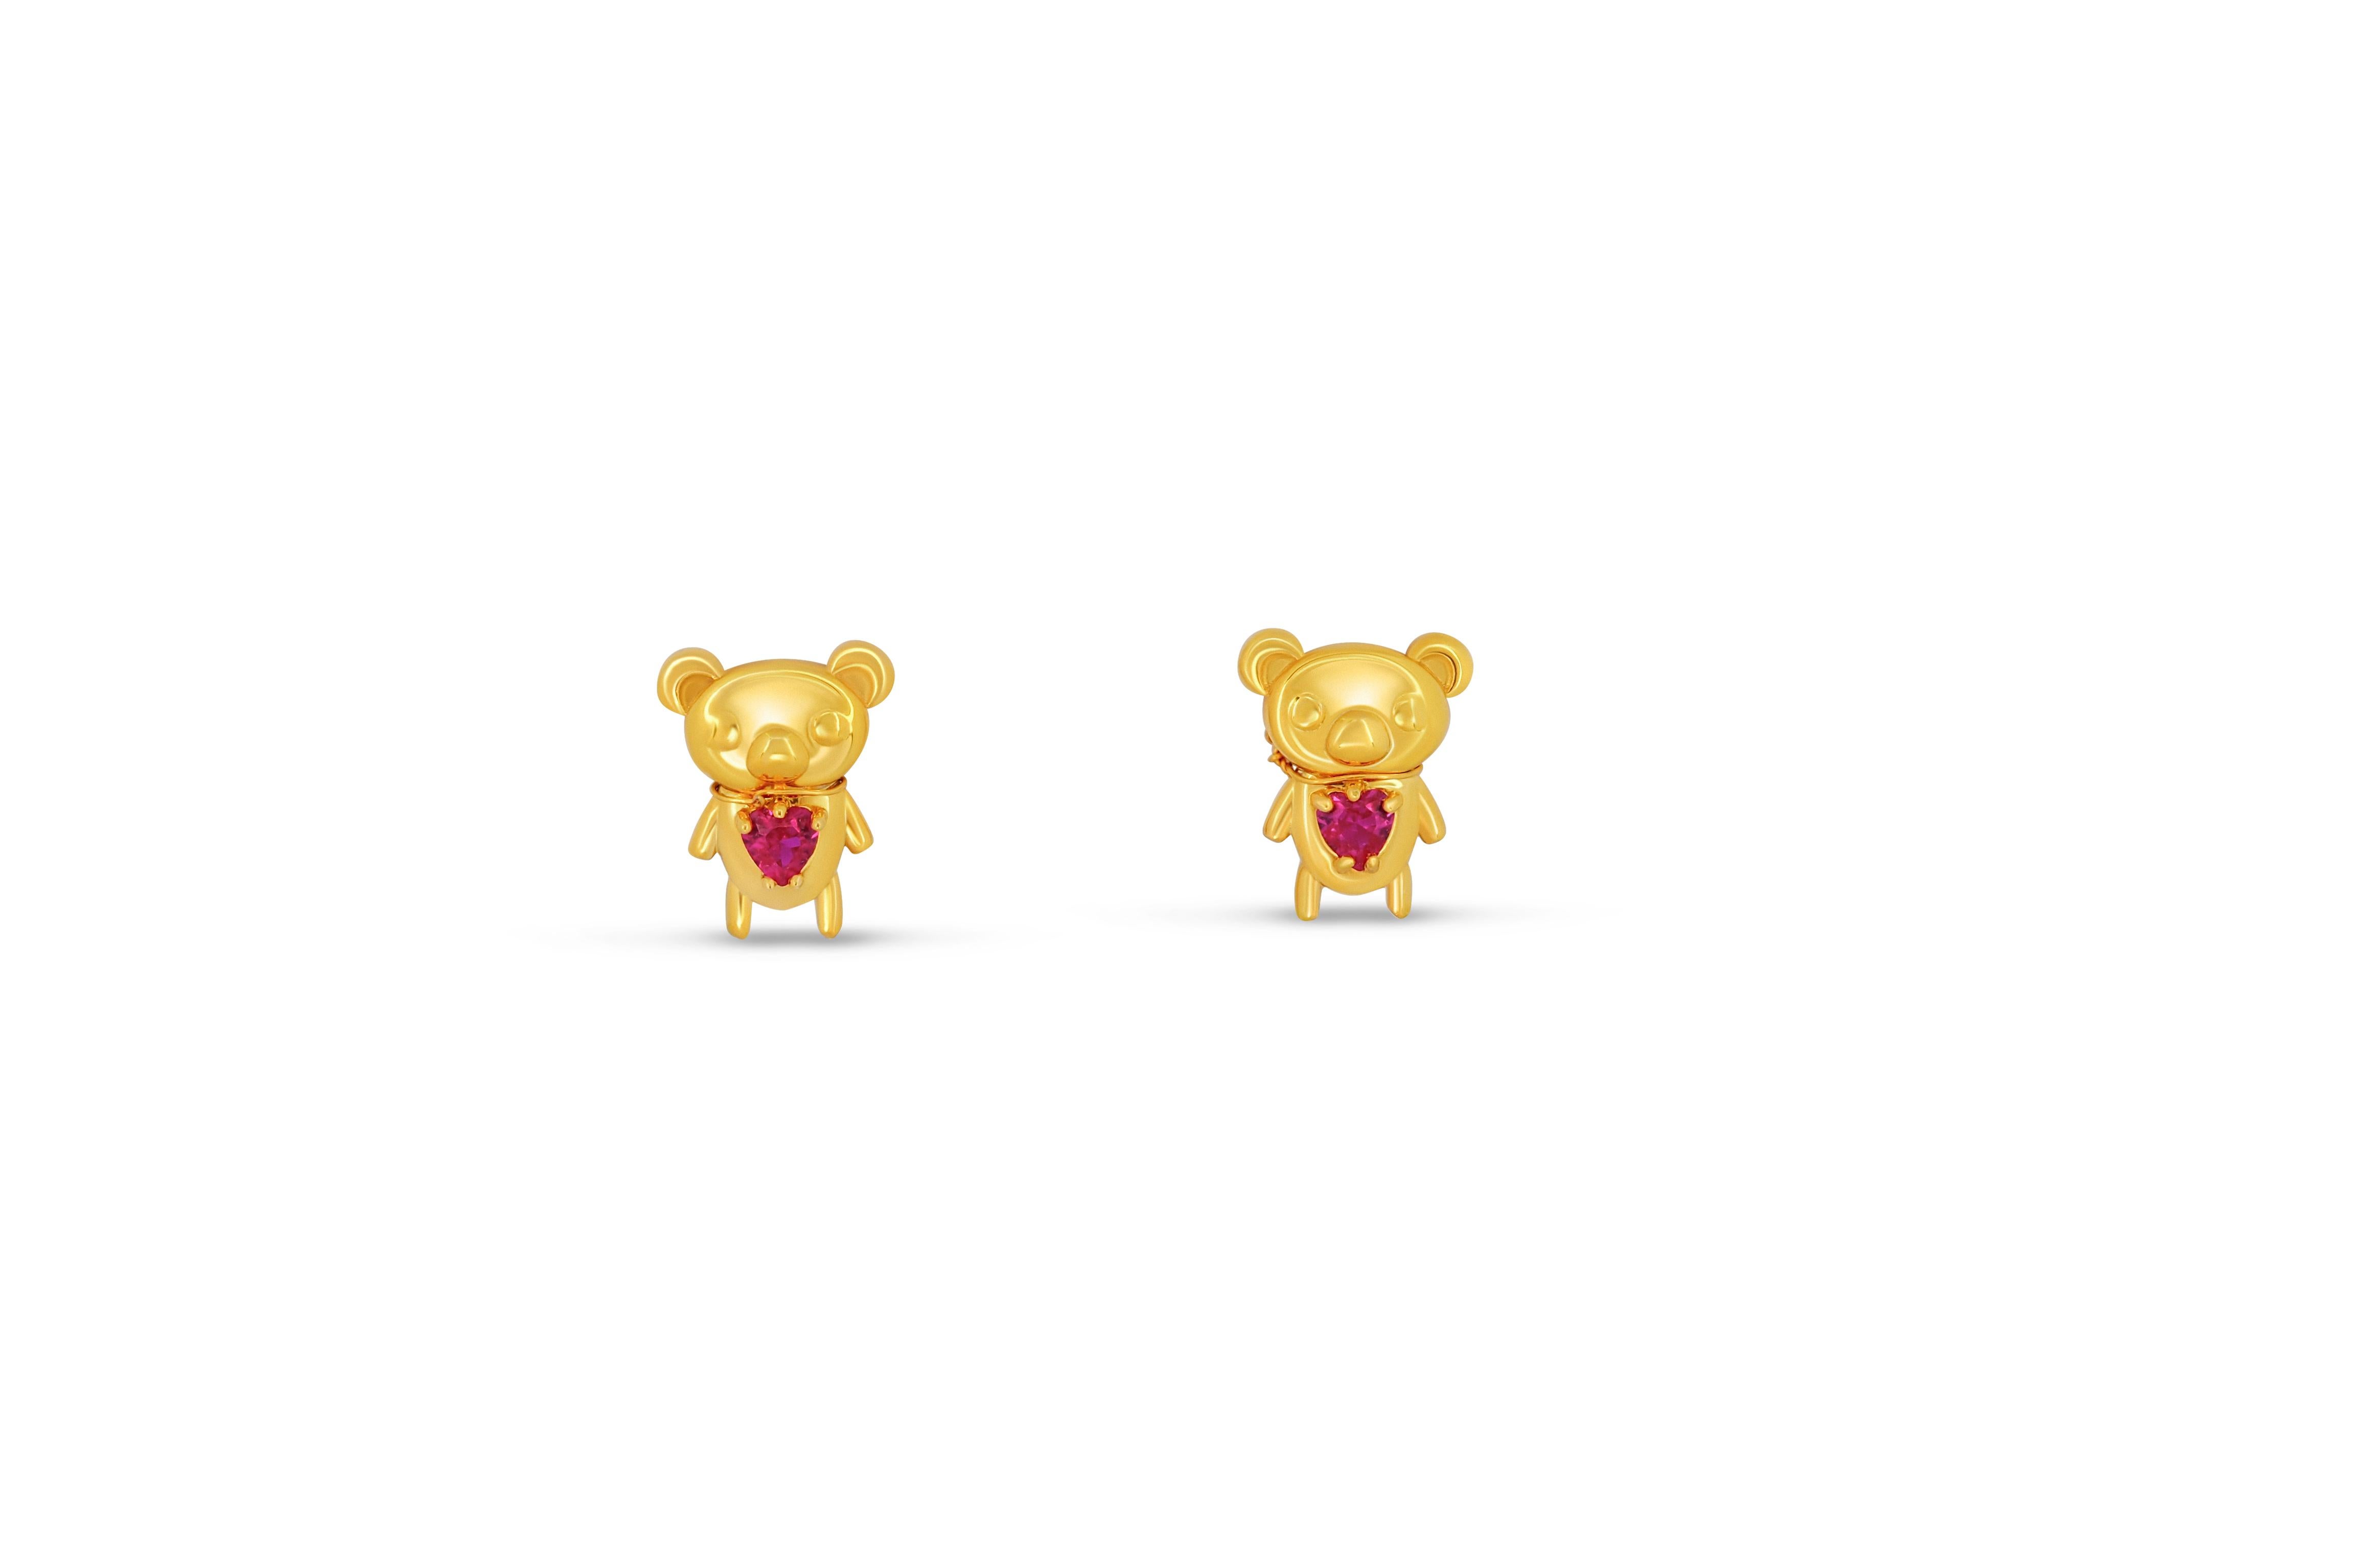 Modern Teddy bear earrings studs in 14k gold. For Sale